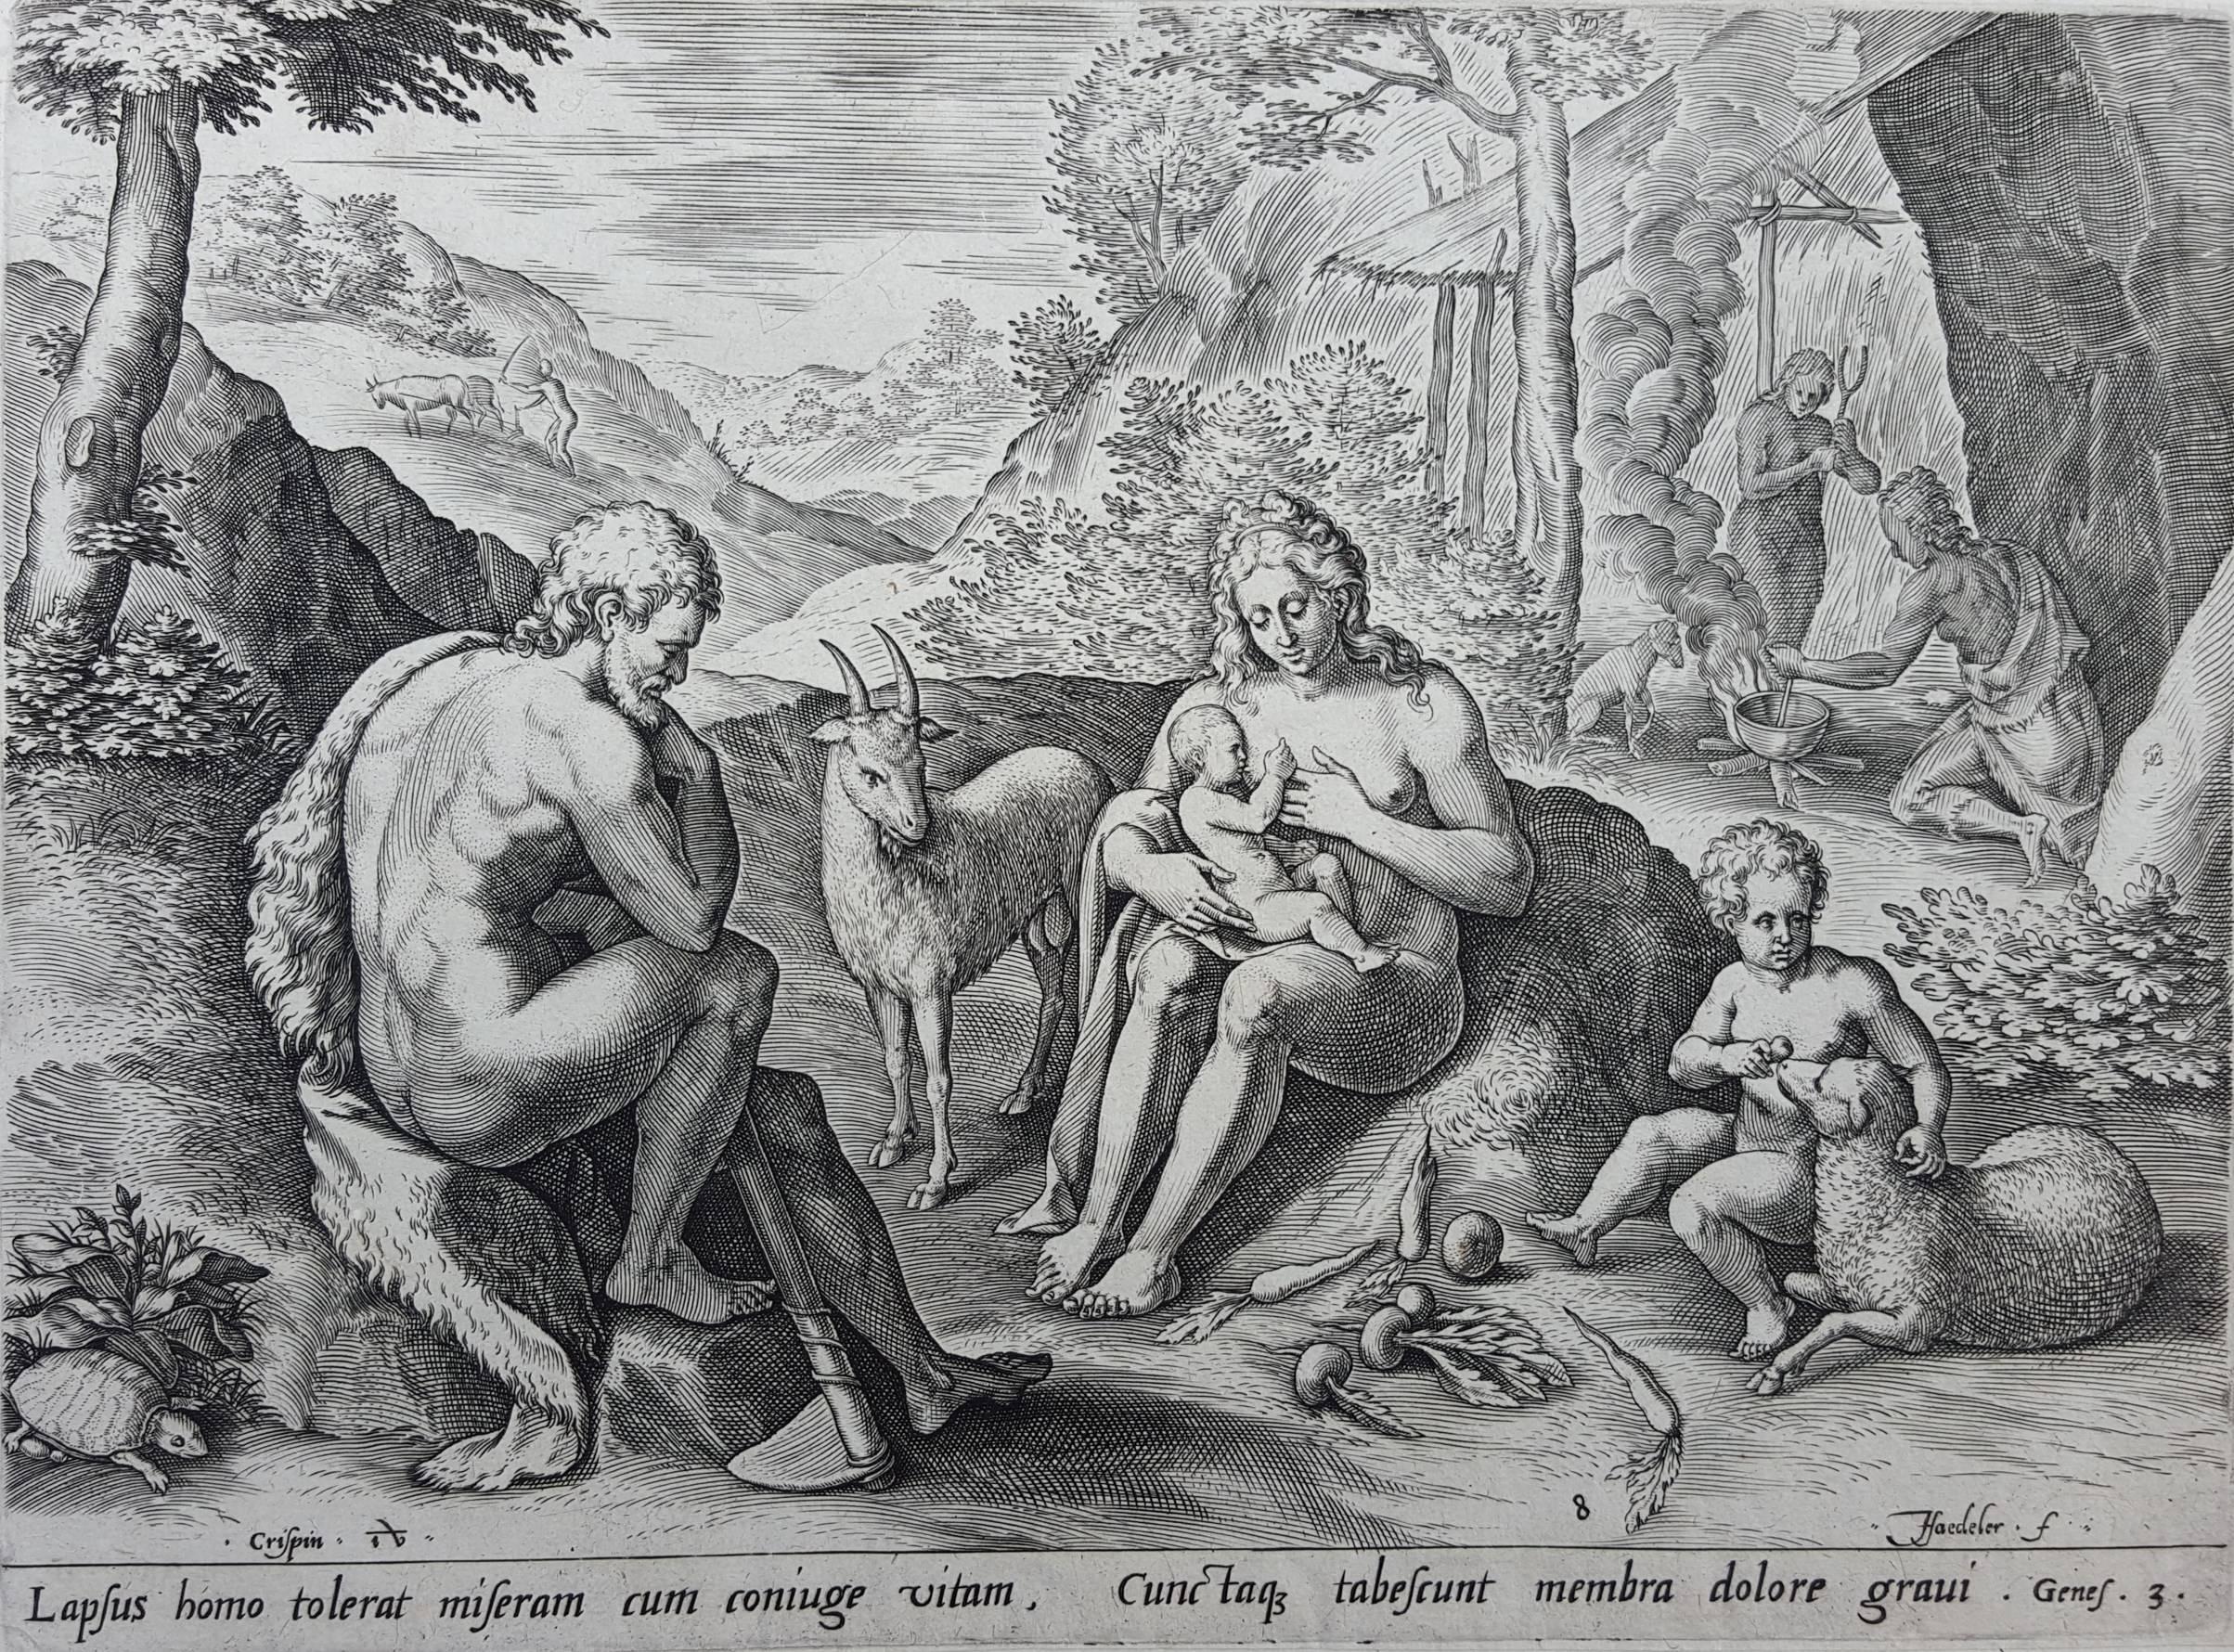 Johannes Sadeler I Figurative Print - Lapsus homo tolerant miseram cum coniuge vitam